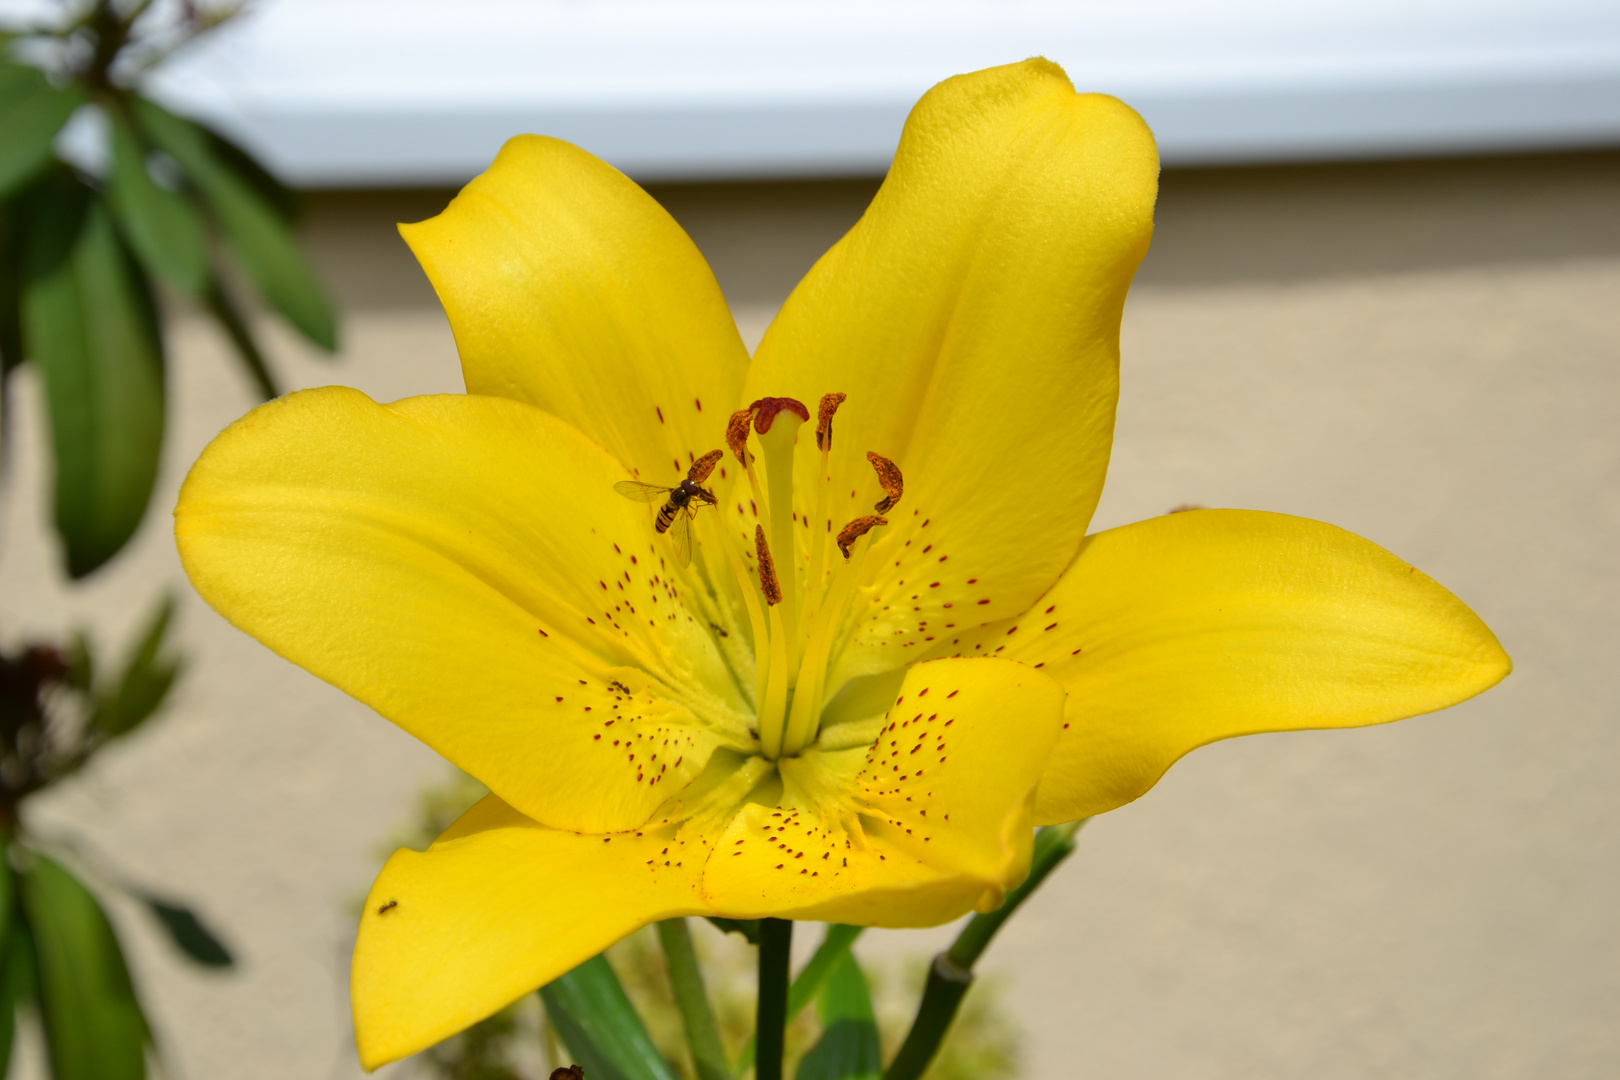 Blume mit "Fliegendingens"